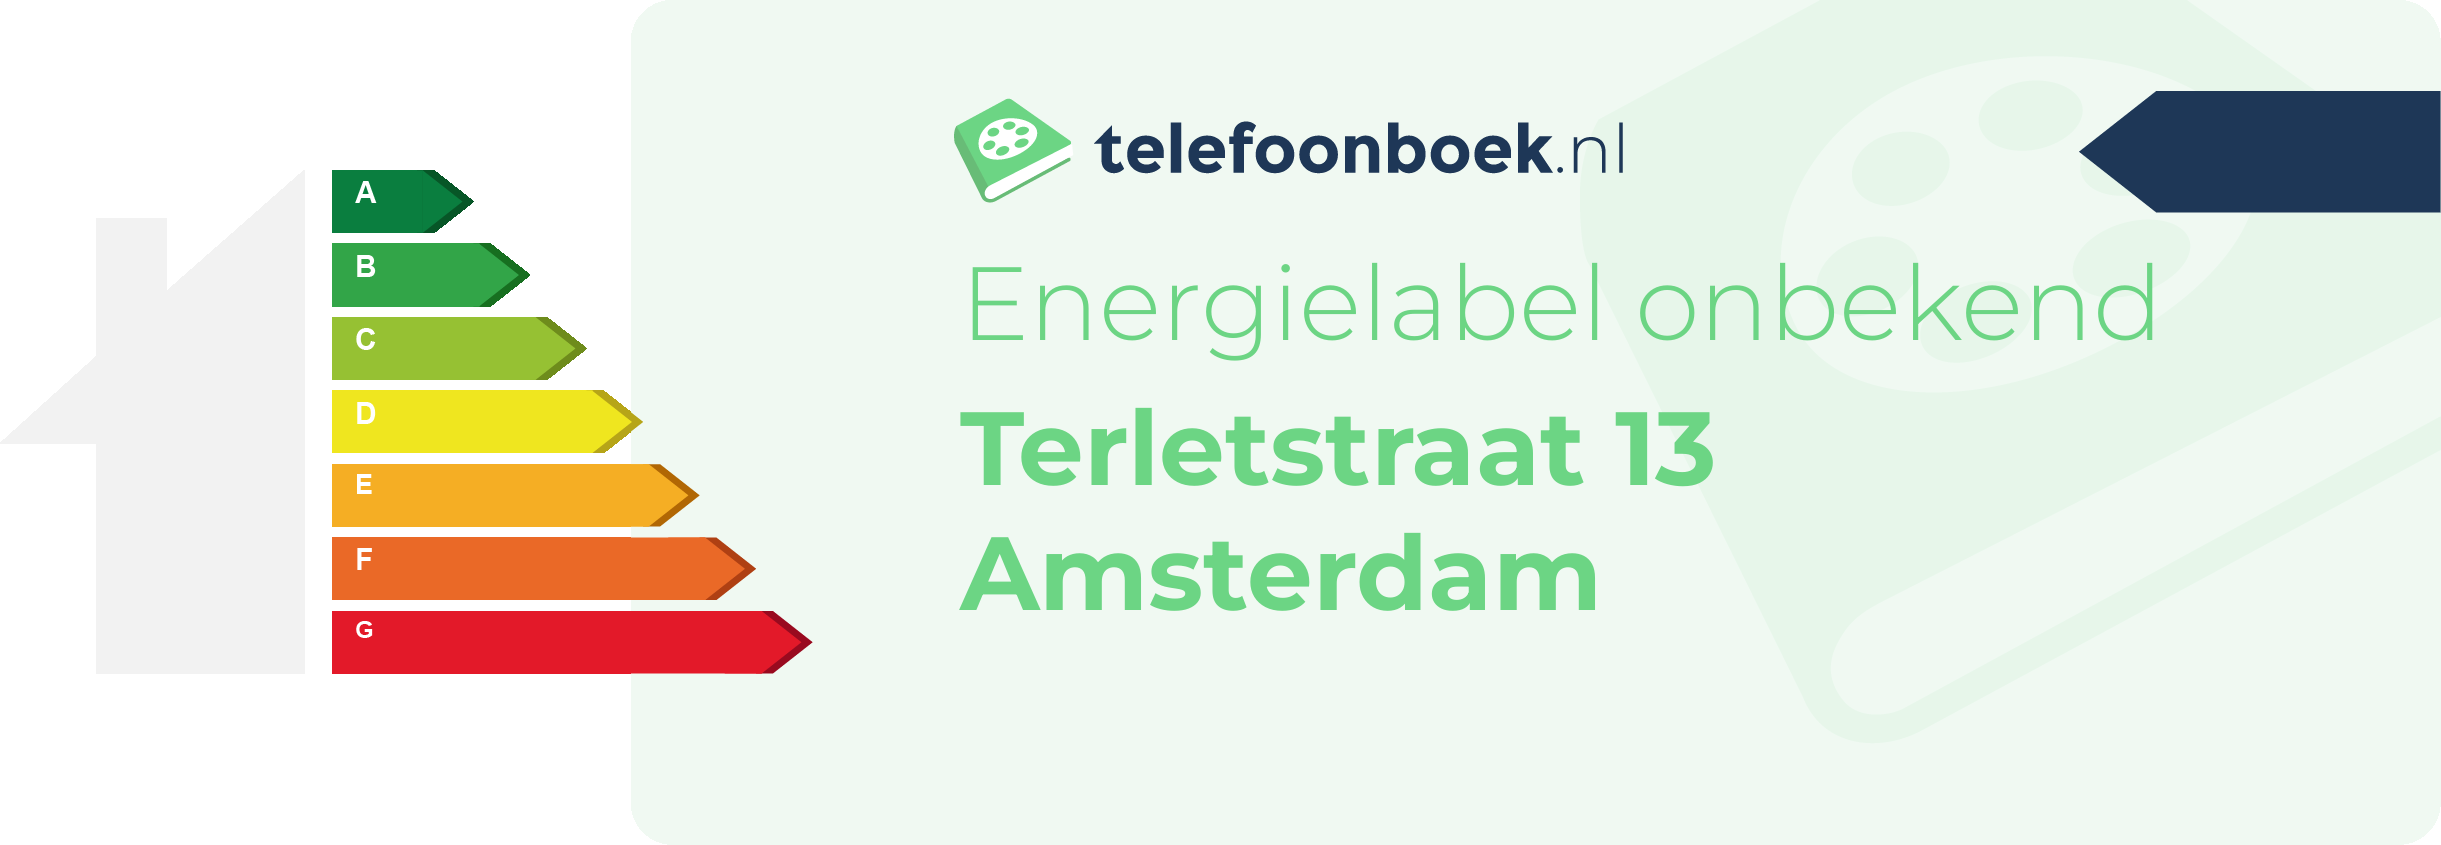 Energielabel Terletstraat 13 Amsterdam